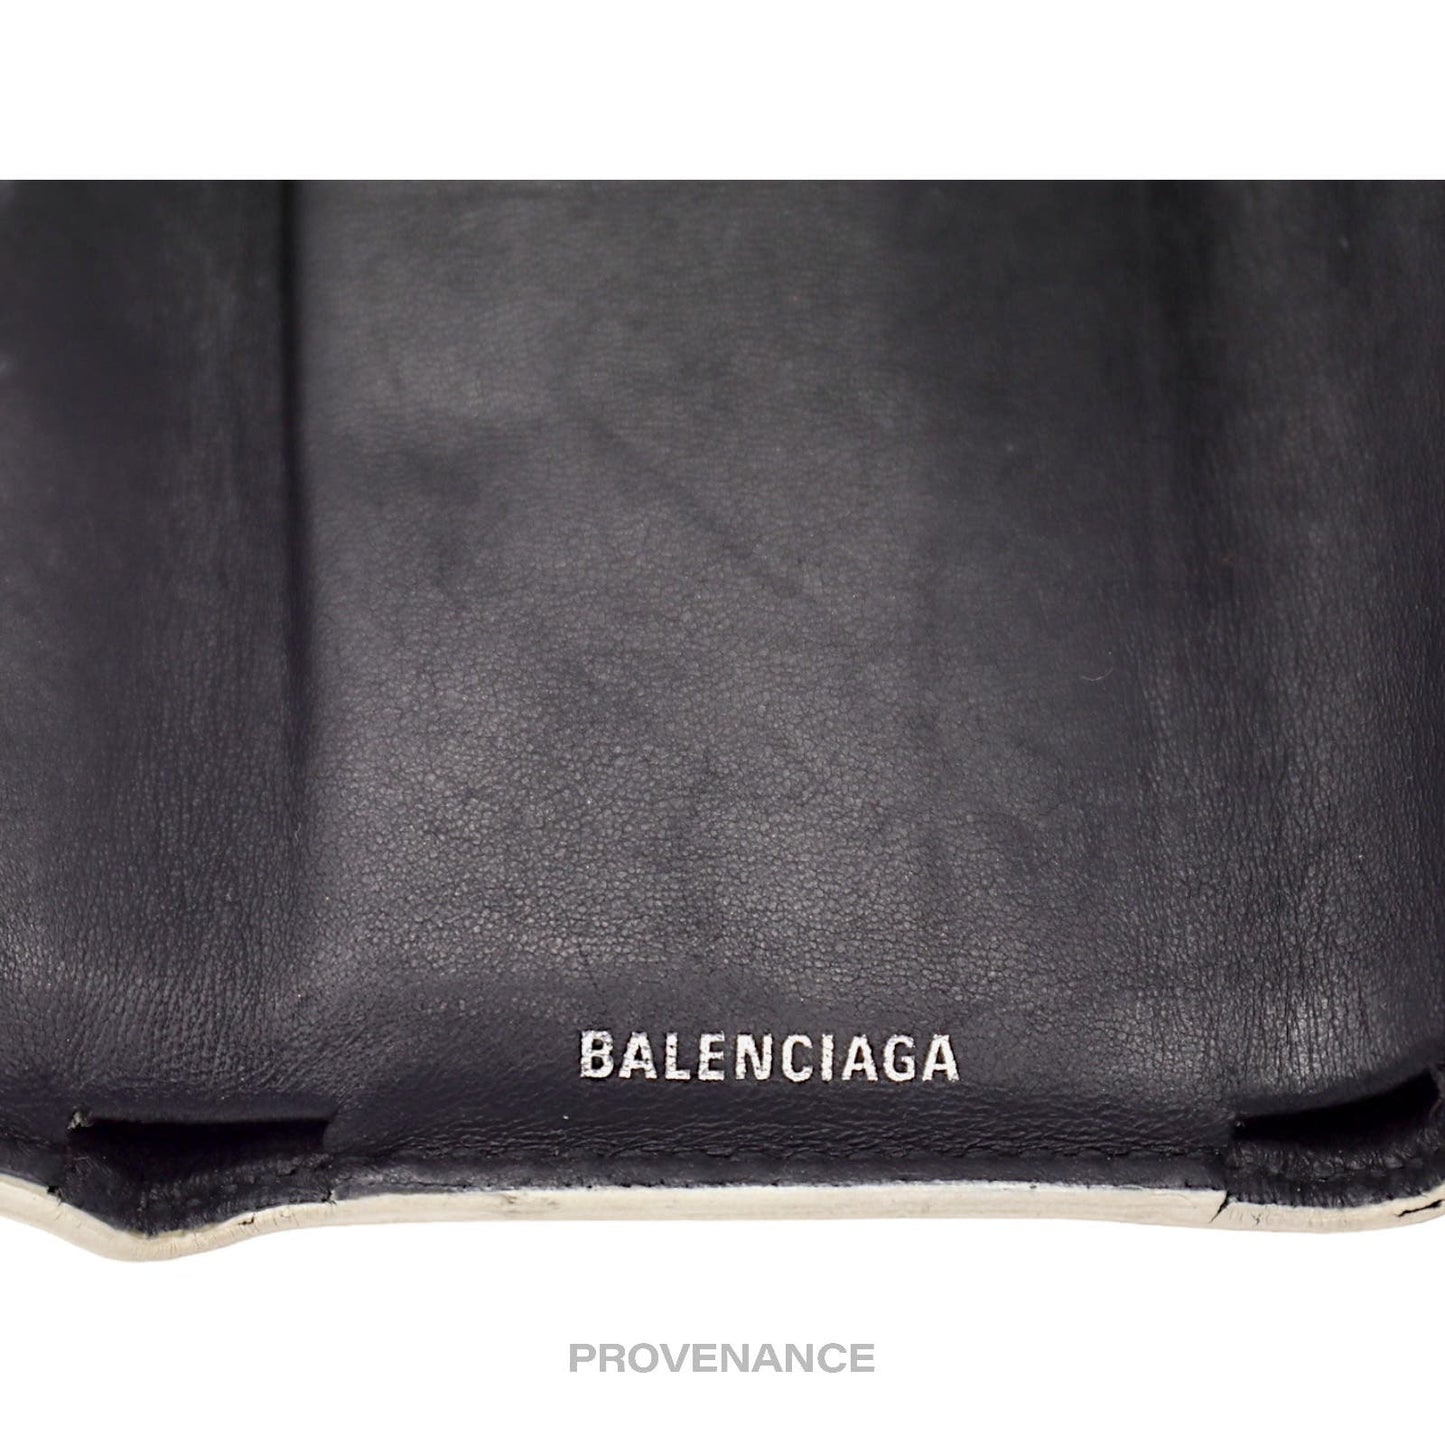 🔴 Balenciaga Logo Trifold Wallet - White Leather